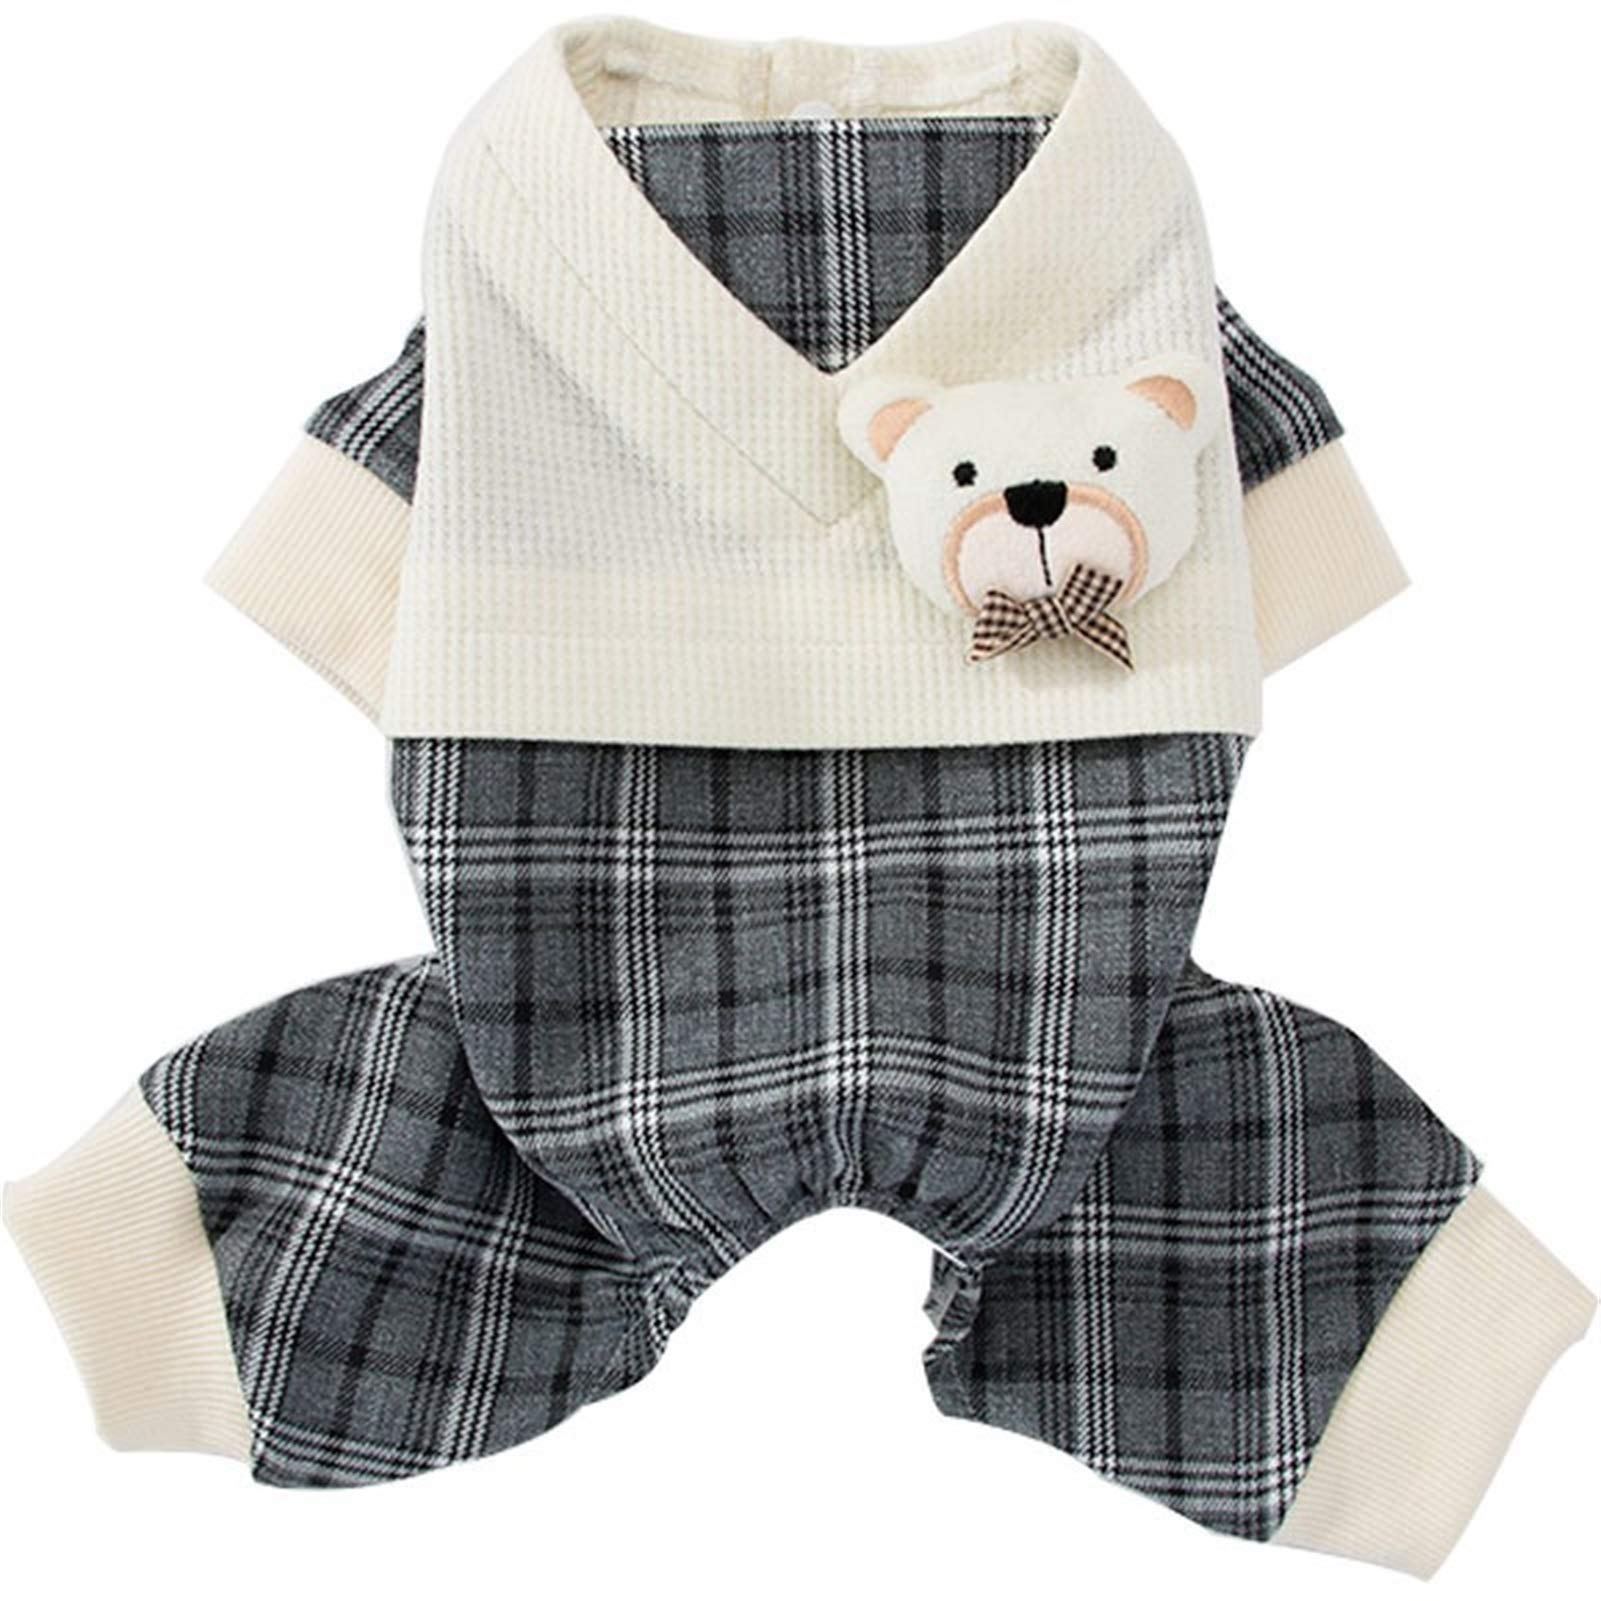 MMAWN Nette warme Hundekleidung für kleine Hunde Winter Baumwolle Hundekleidung Mantel Welpen Kostüm Pullover Mantel Chihuahua Outfits Ropa (Size : Medium)